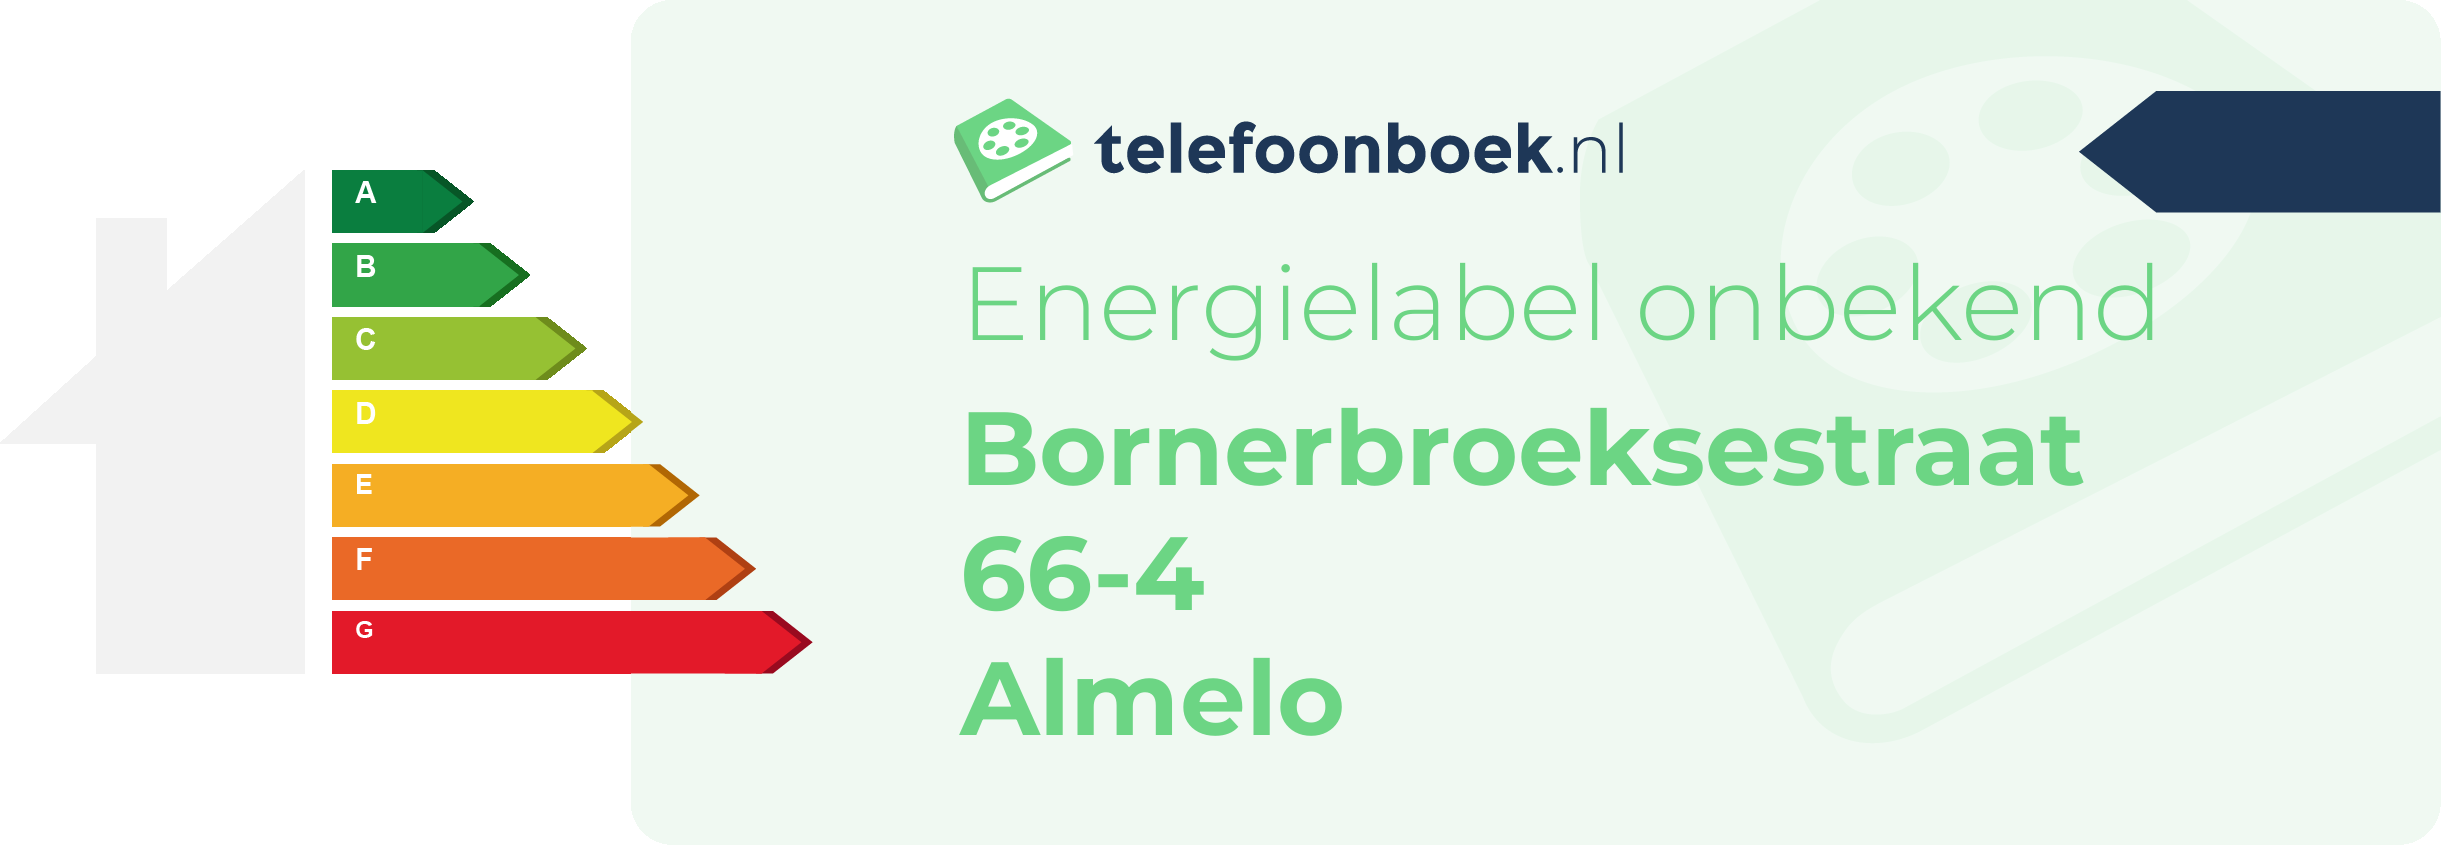 Energielabel Bornerbroeksestraat 66-4 Almelo